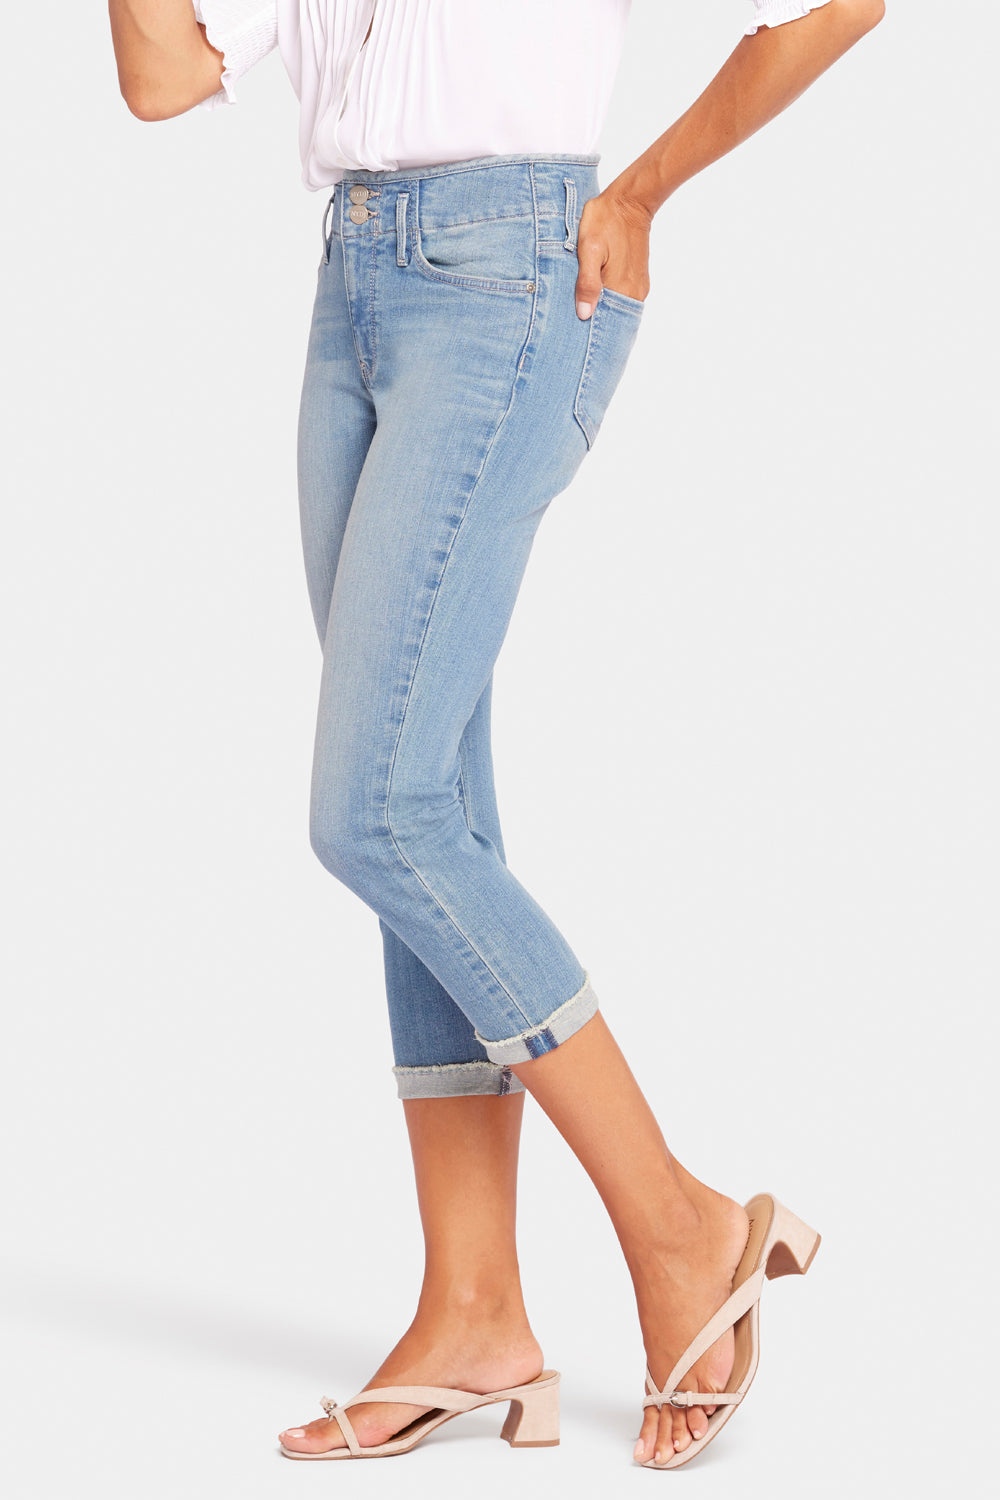 NYDJ Chloe Capri Jeans With Cuffs - Mesmerize